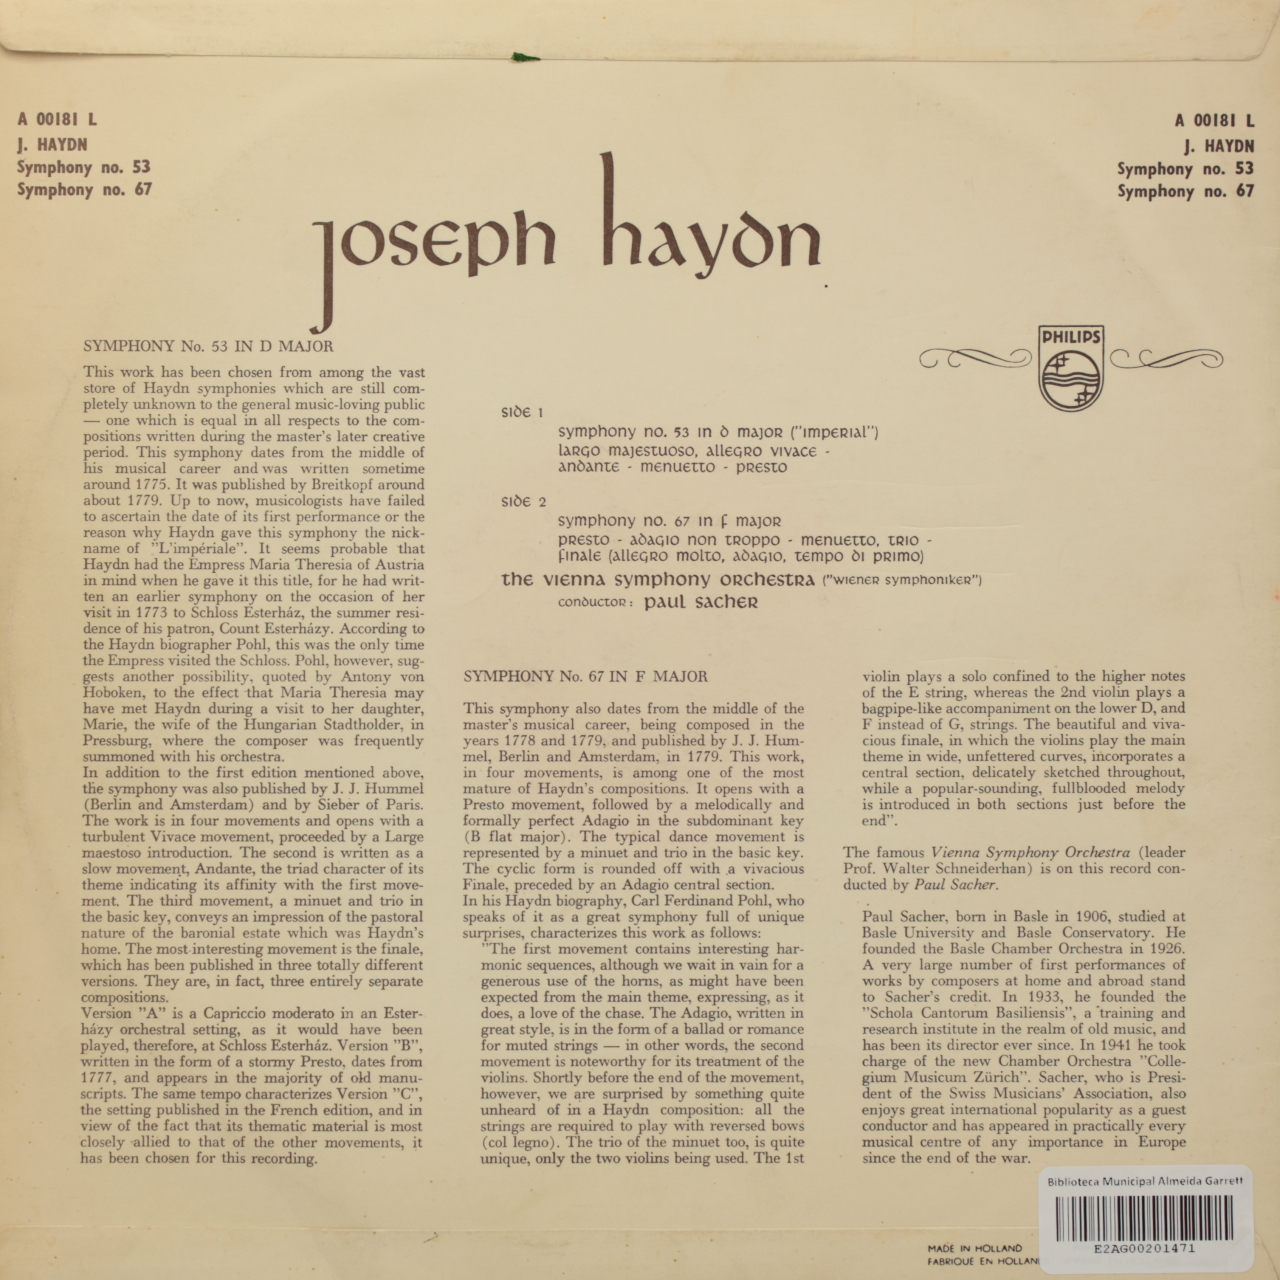 Haydn: Symphony No. 53 in D major (